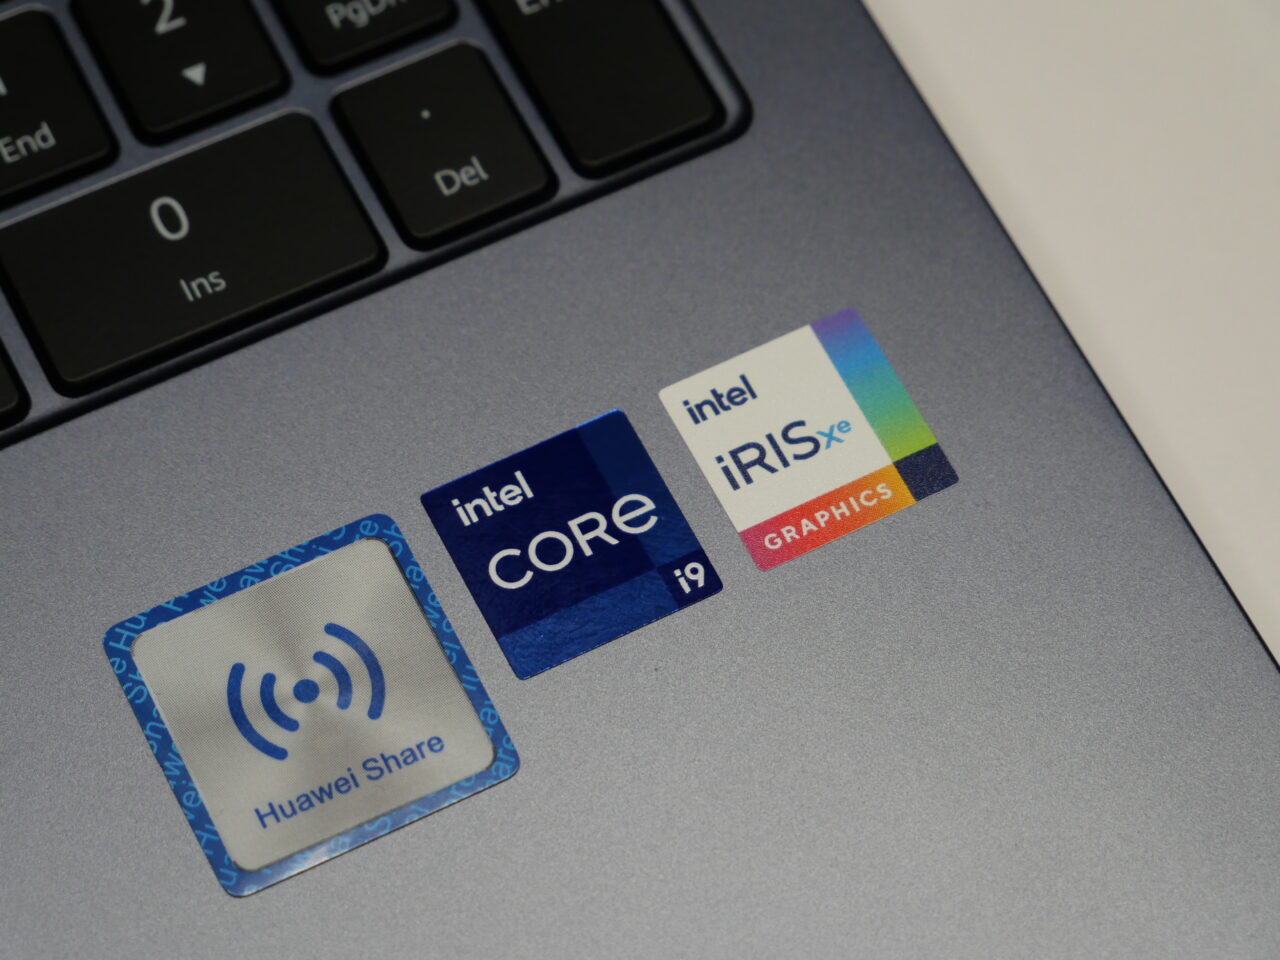 Naklejki na laptopie prezentujące logo "intel CORE i9" i "intel IRIS Xe GRAPHICS" wraz z "Huawei Share".